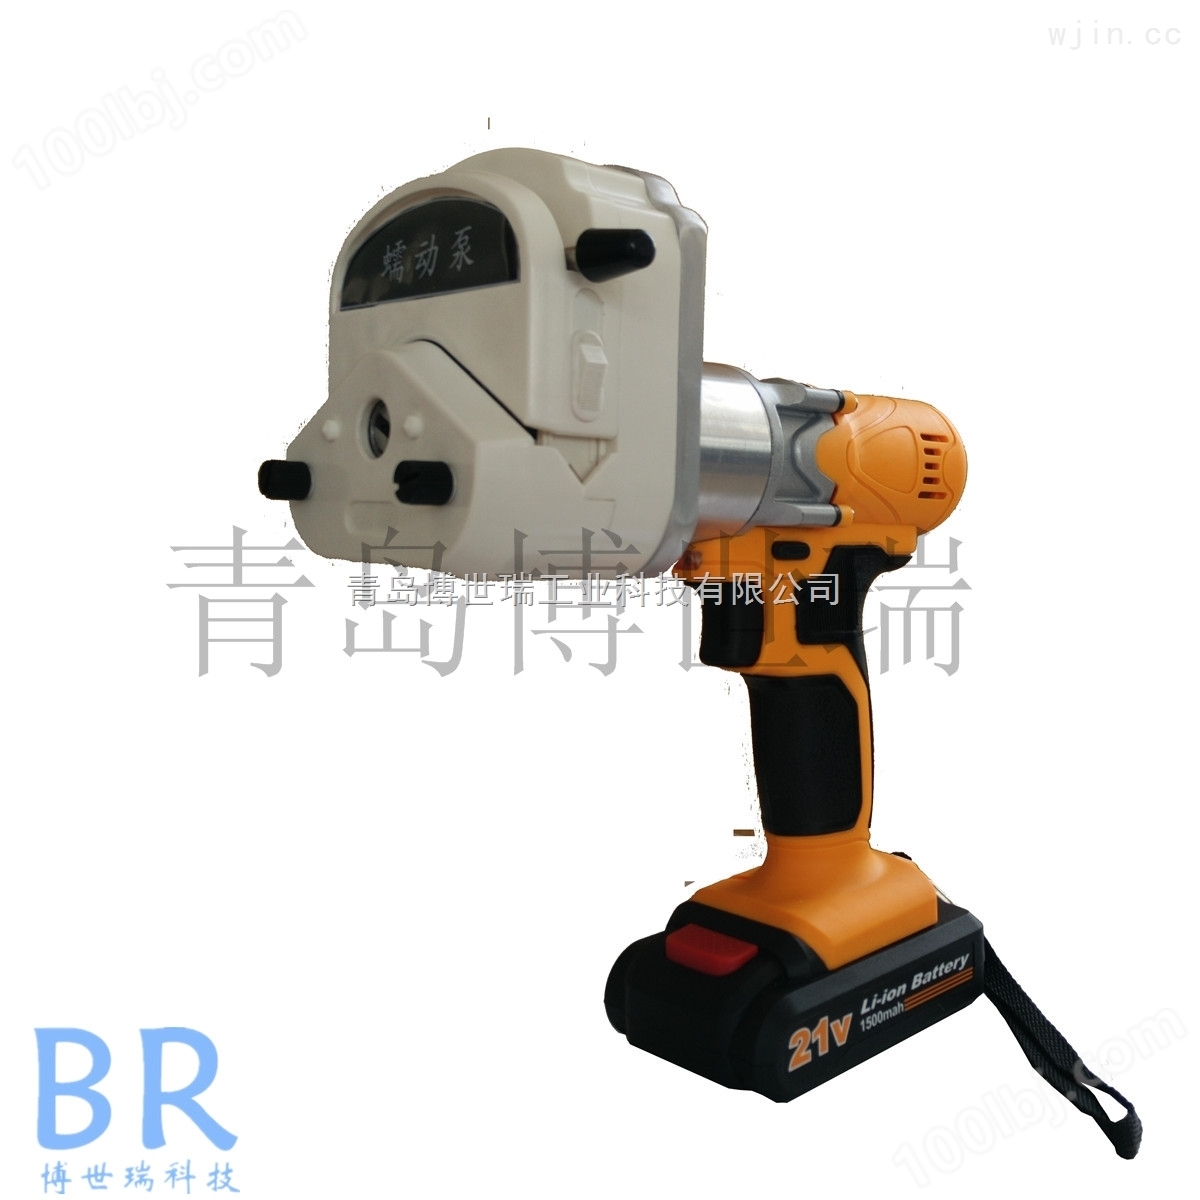 博世瑞供应BR-8000A上海*手持式电动水质采样器